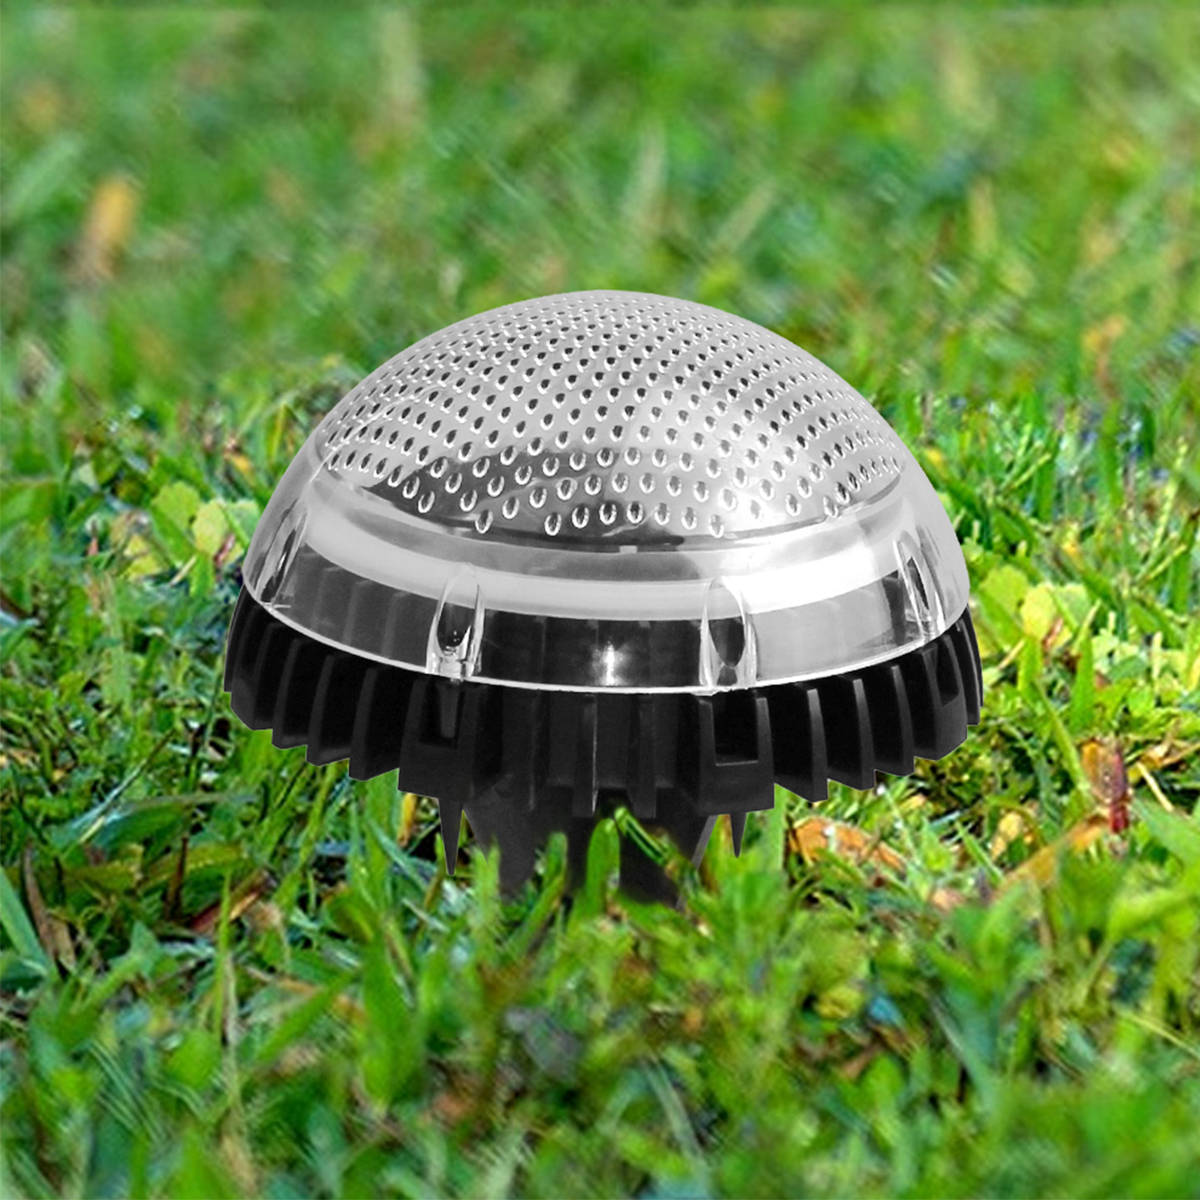 2PCS-Auto-Sensing-LED-Solar-Ball-Light-Garden-Outdoor-Patio-Lawn-Path-Lamp-For-Home-Decor-1770112-3